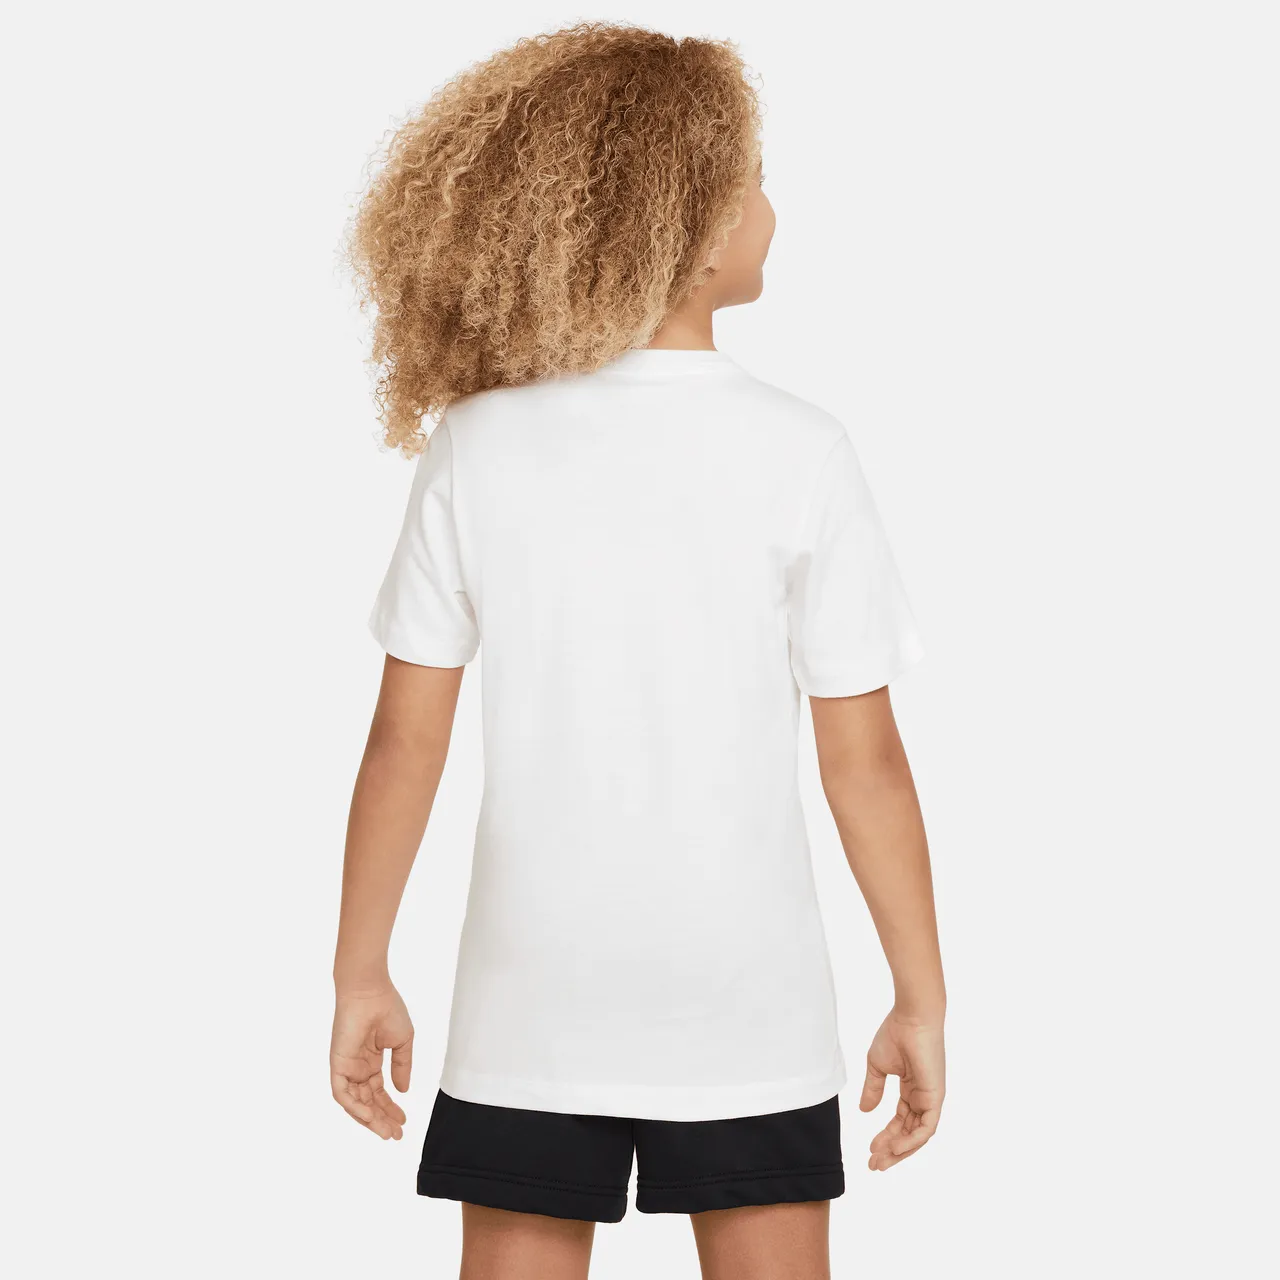 Paris Saint-Germain Older Kids' Nike Football T-shirt - White - Cotton